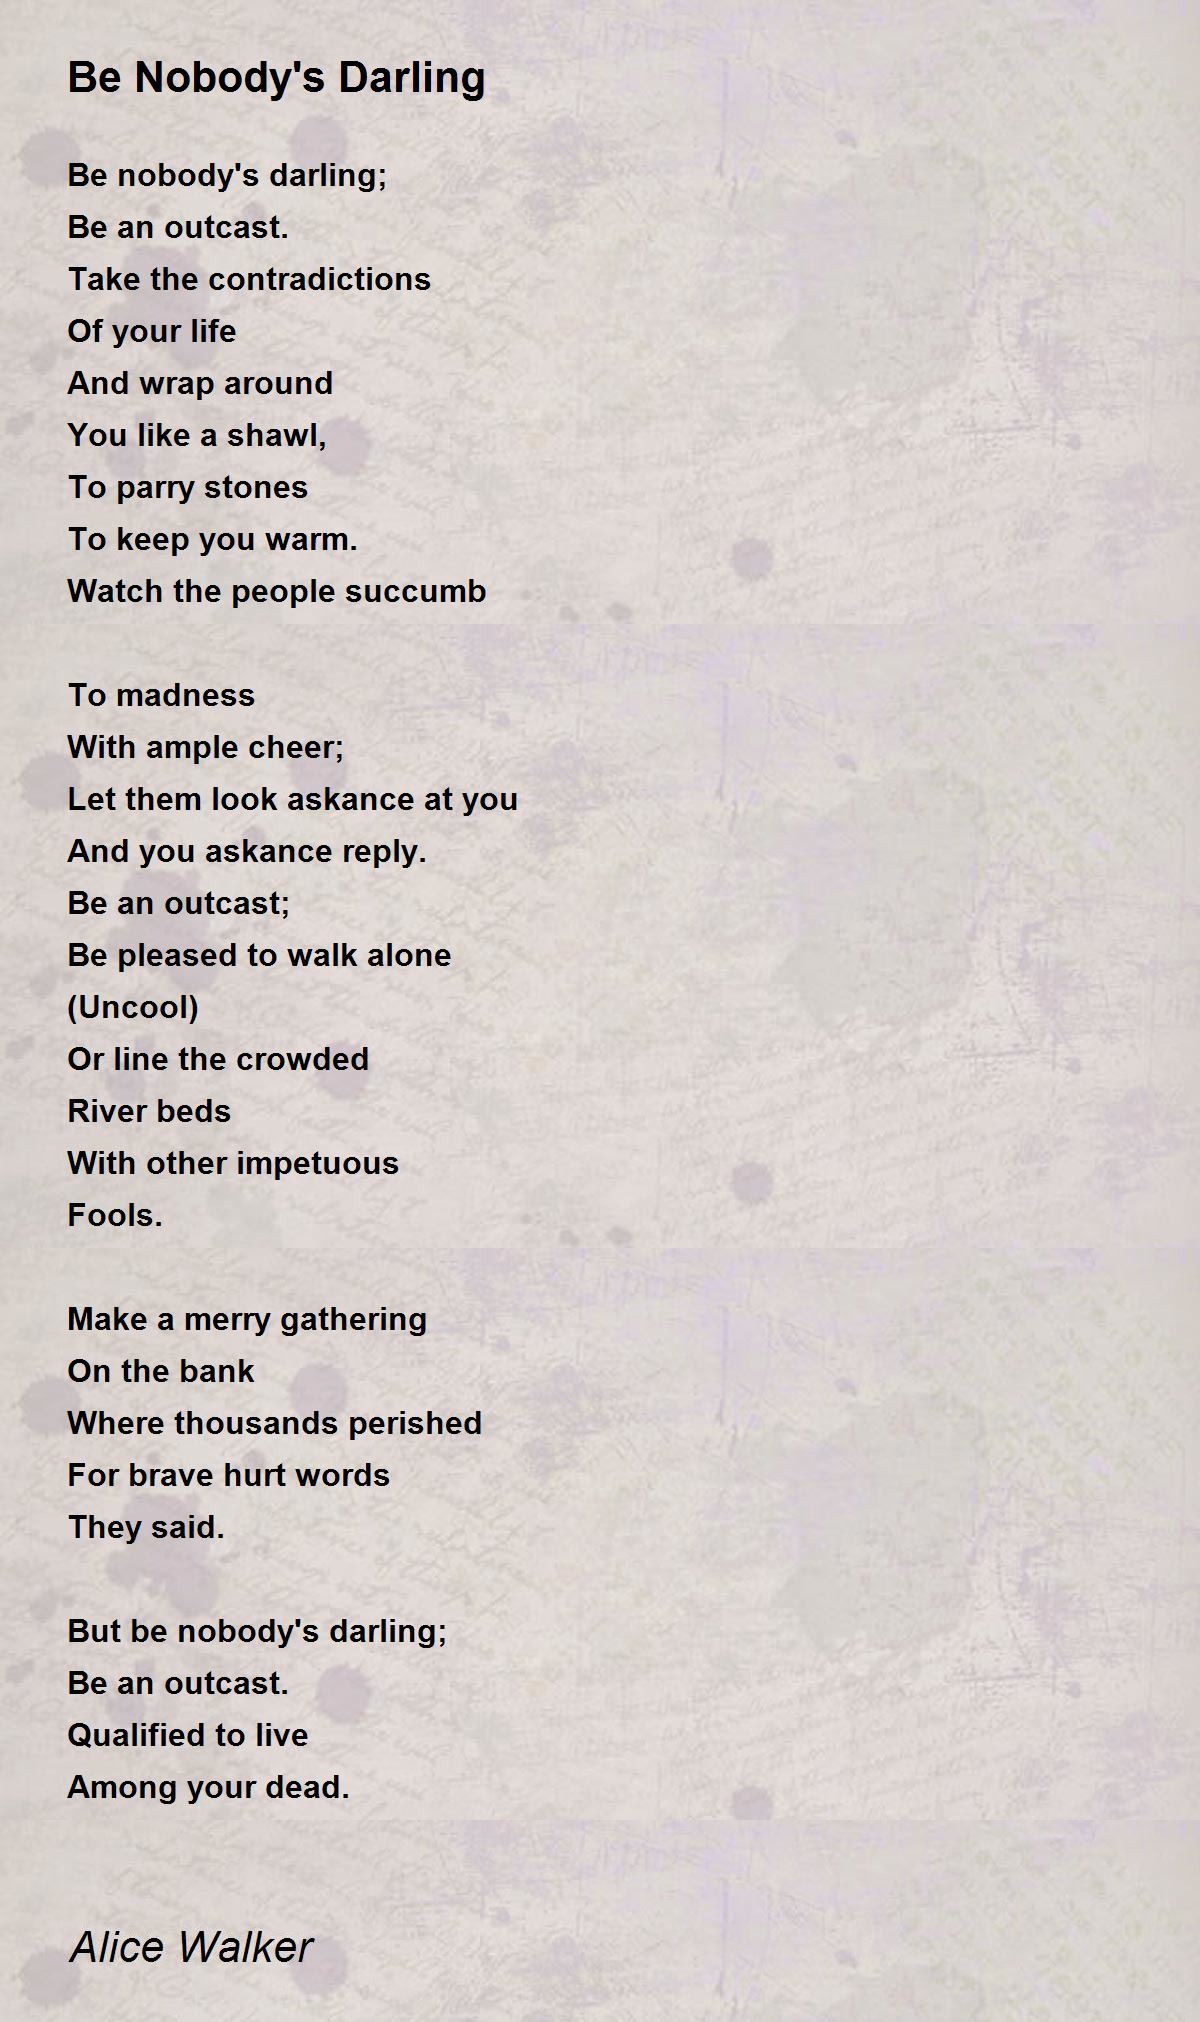 Be Nobody's Darling - Poem by Alice Walker